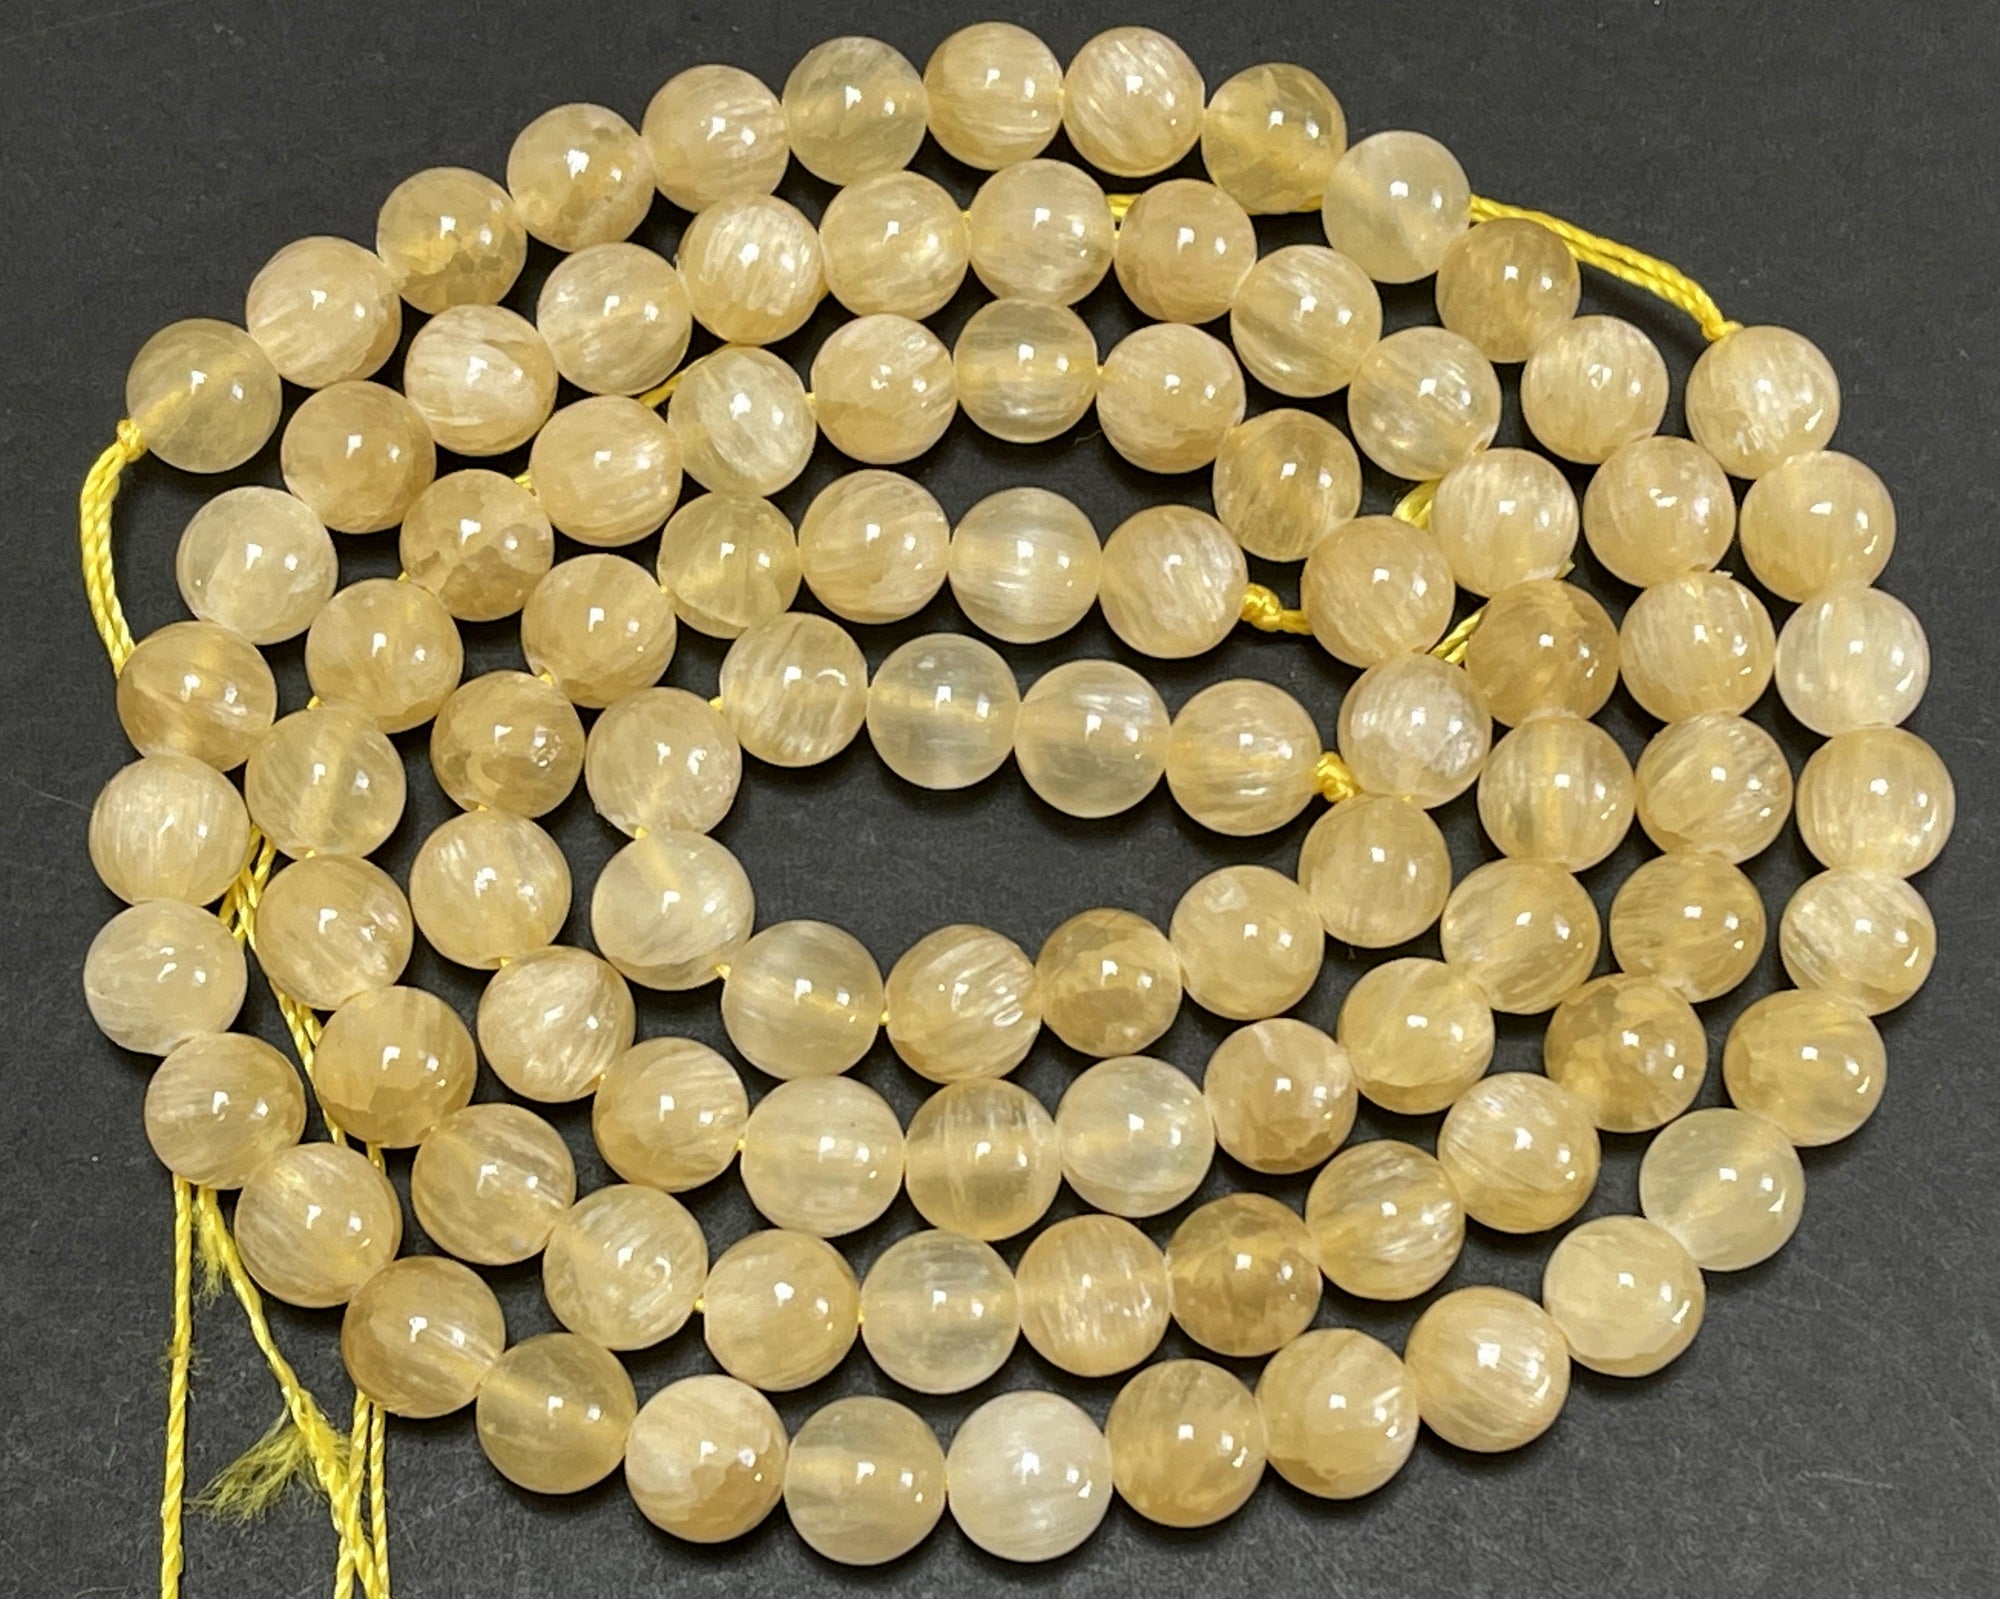 Yellow Selenite 8mm round natural gemstone beads 16" strand